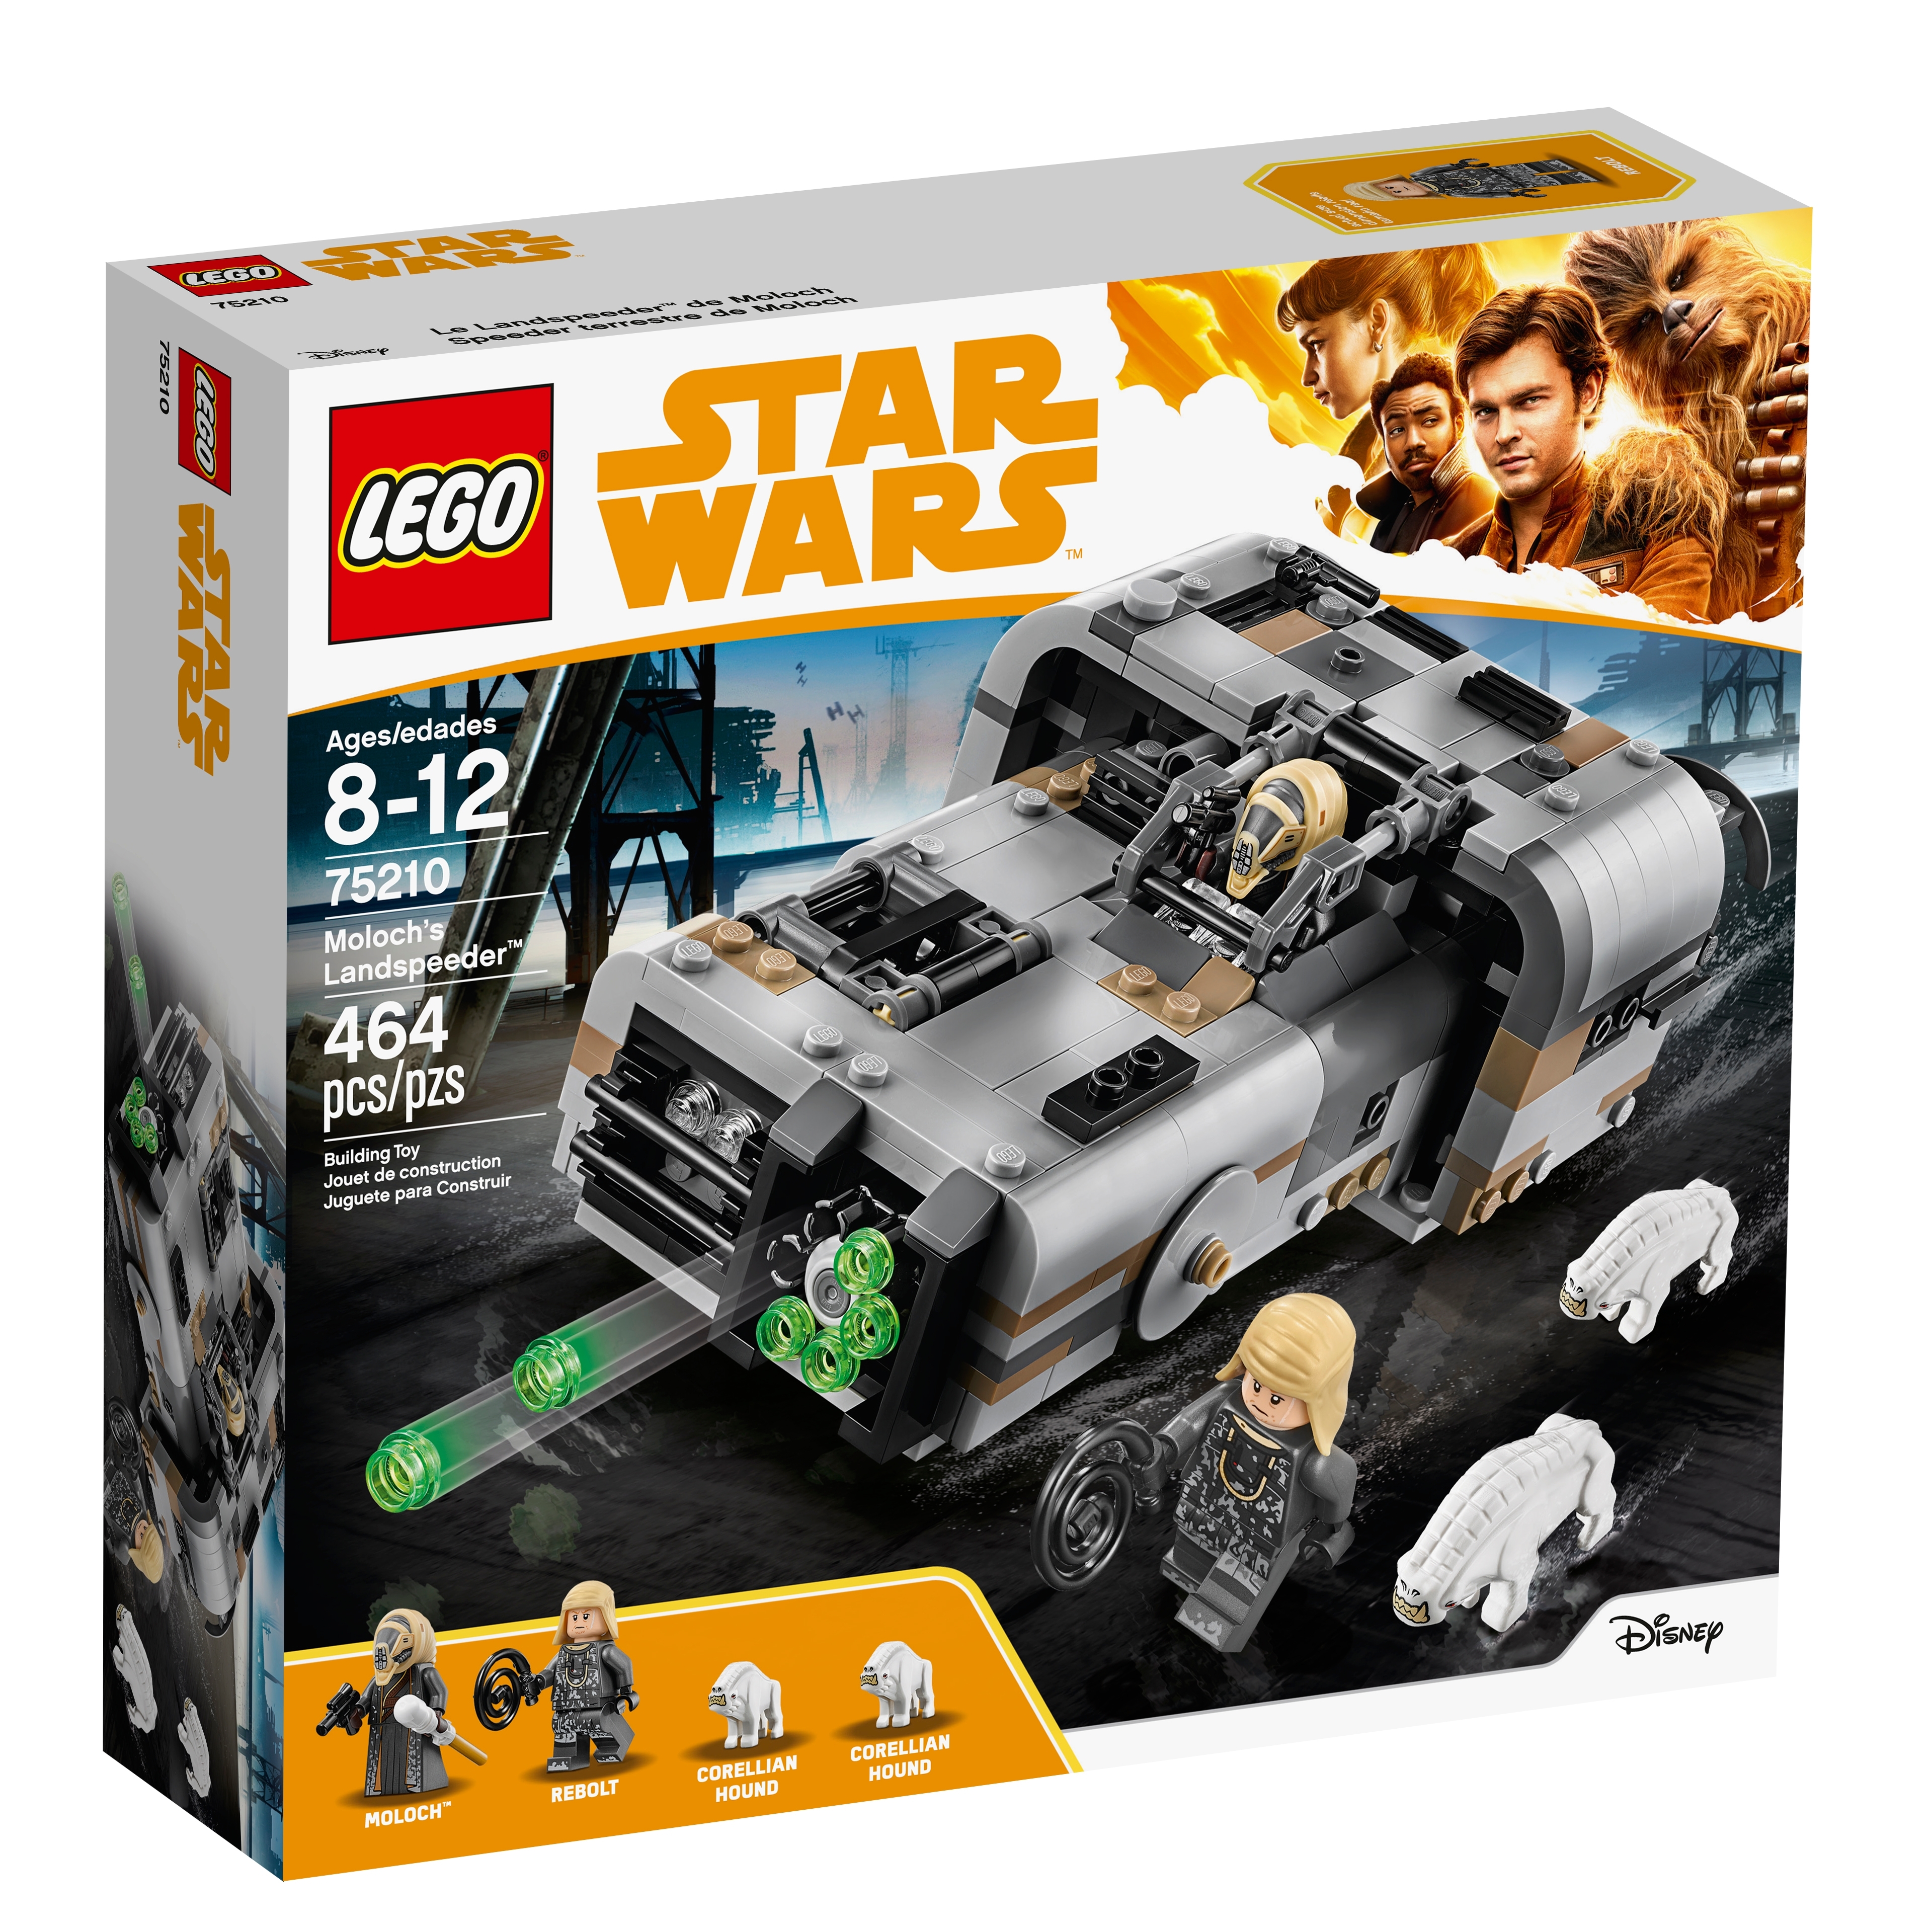 for sale online Lego Star Wars Moloch's Landspeeder 75210